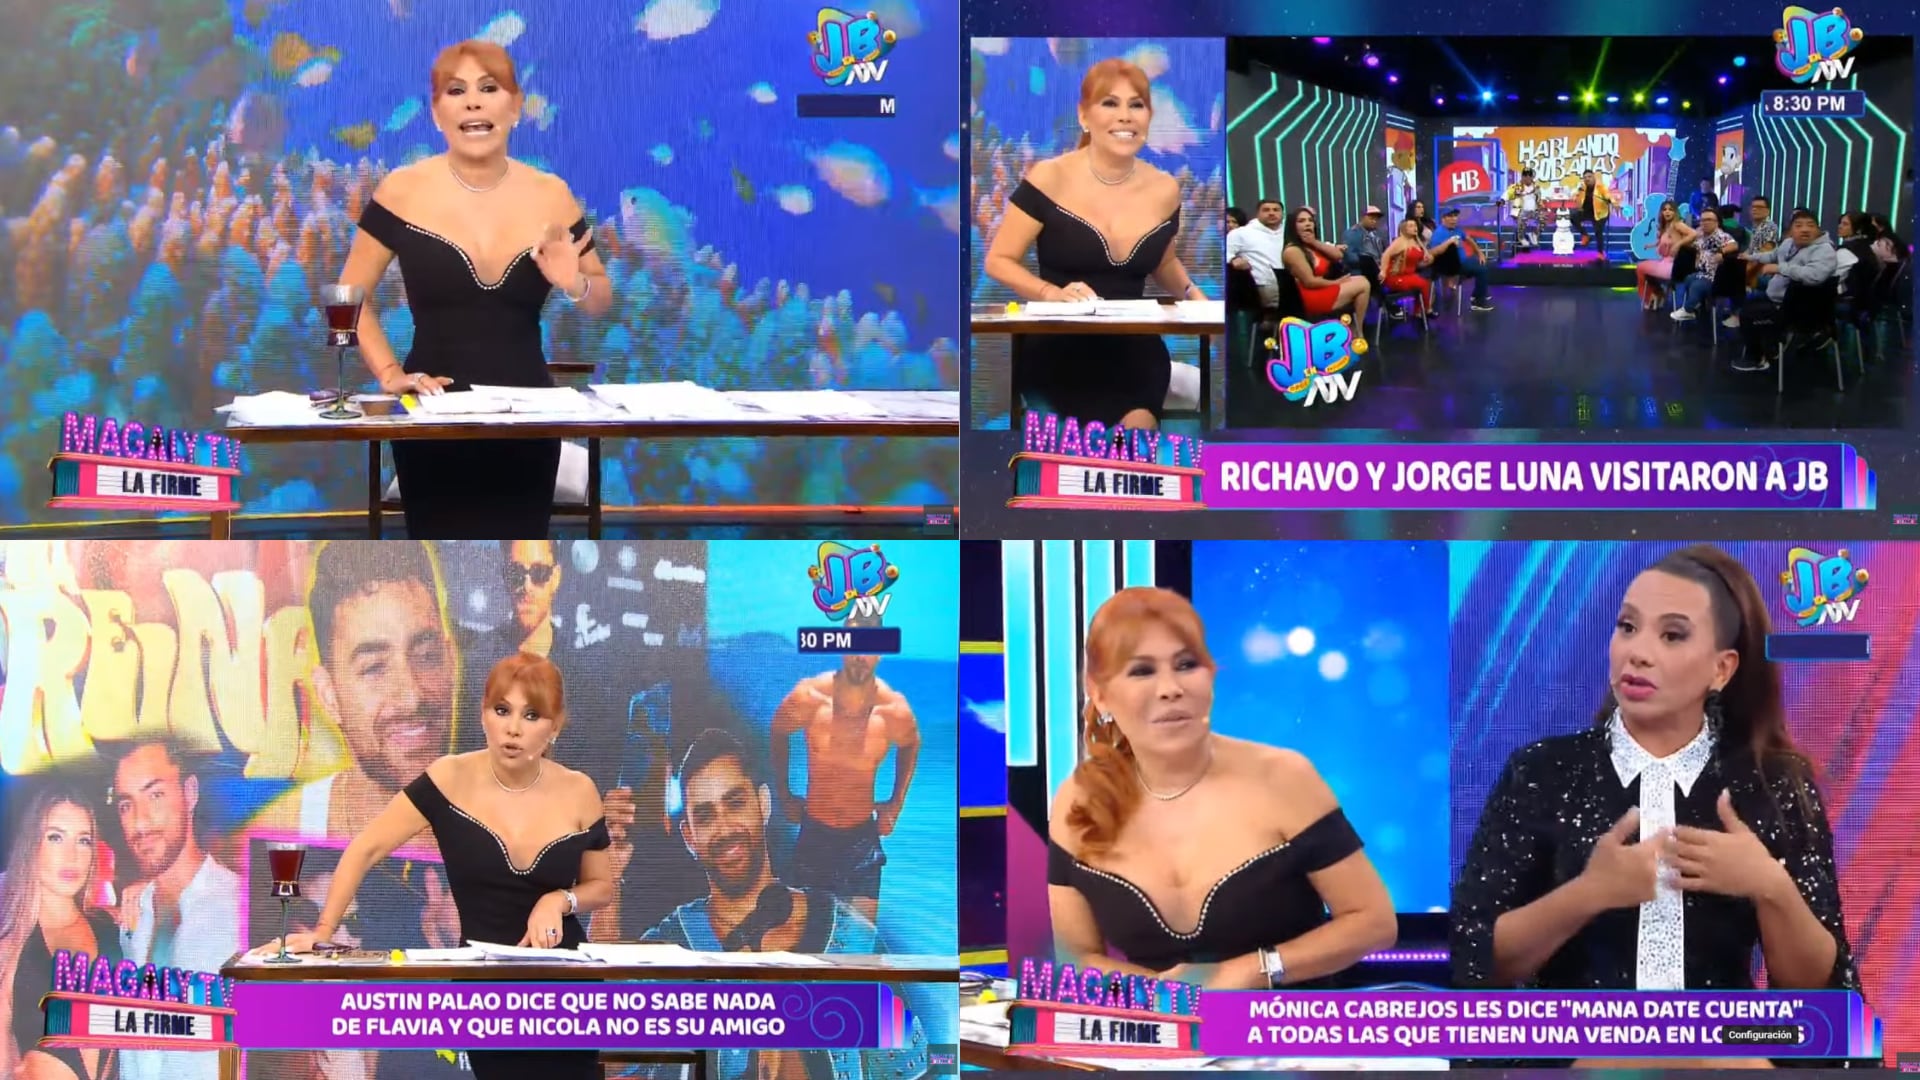 Magaly TV La Firme. (Captura de ATV)